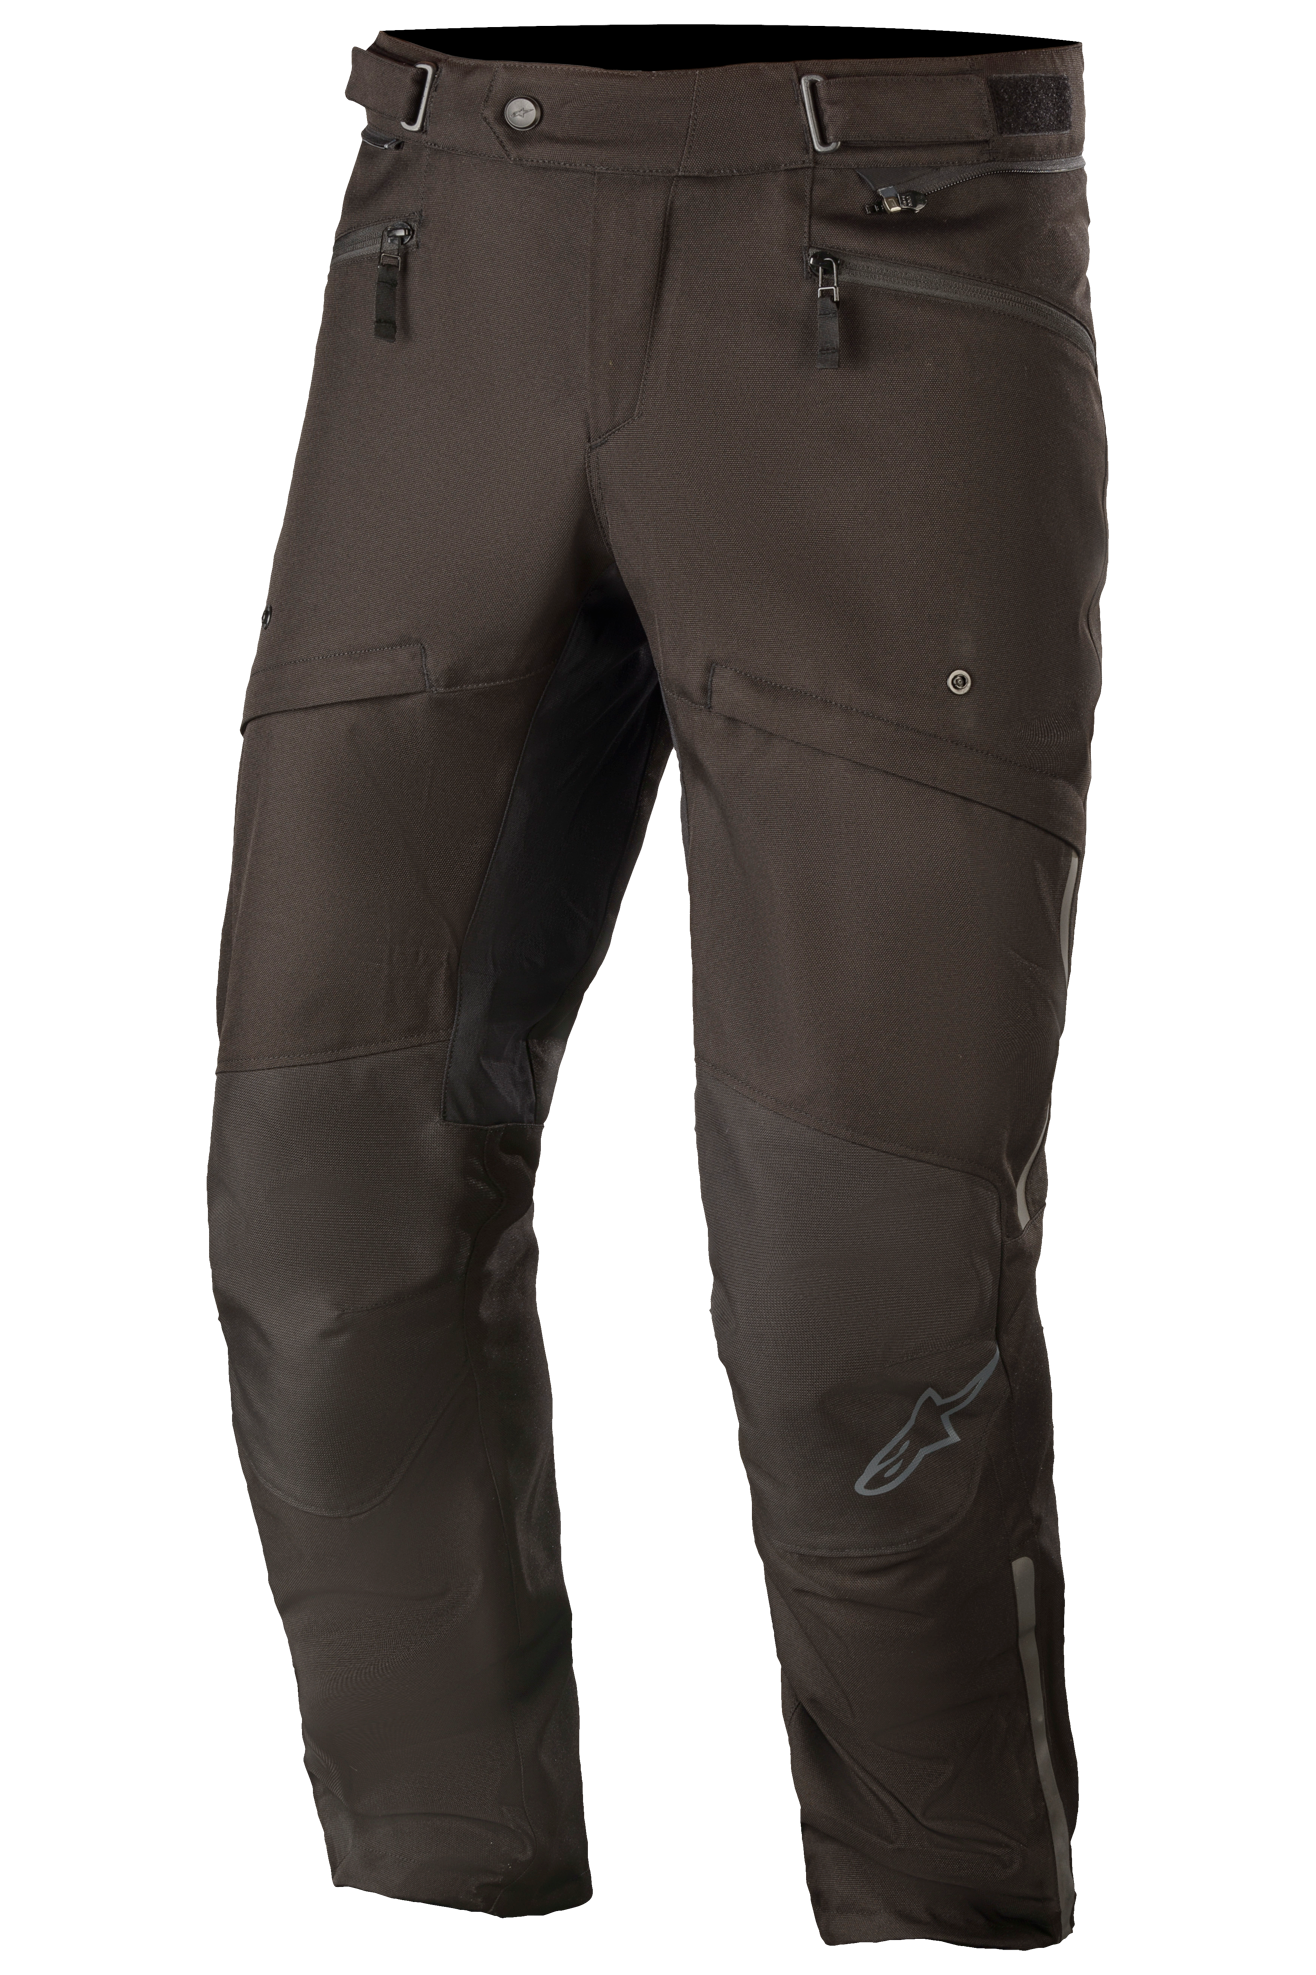 Alpinestars Pantalones de Moto  AST-1 V2 WP Drystar Cortos Negros